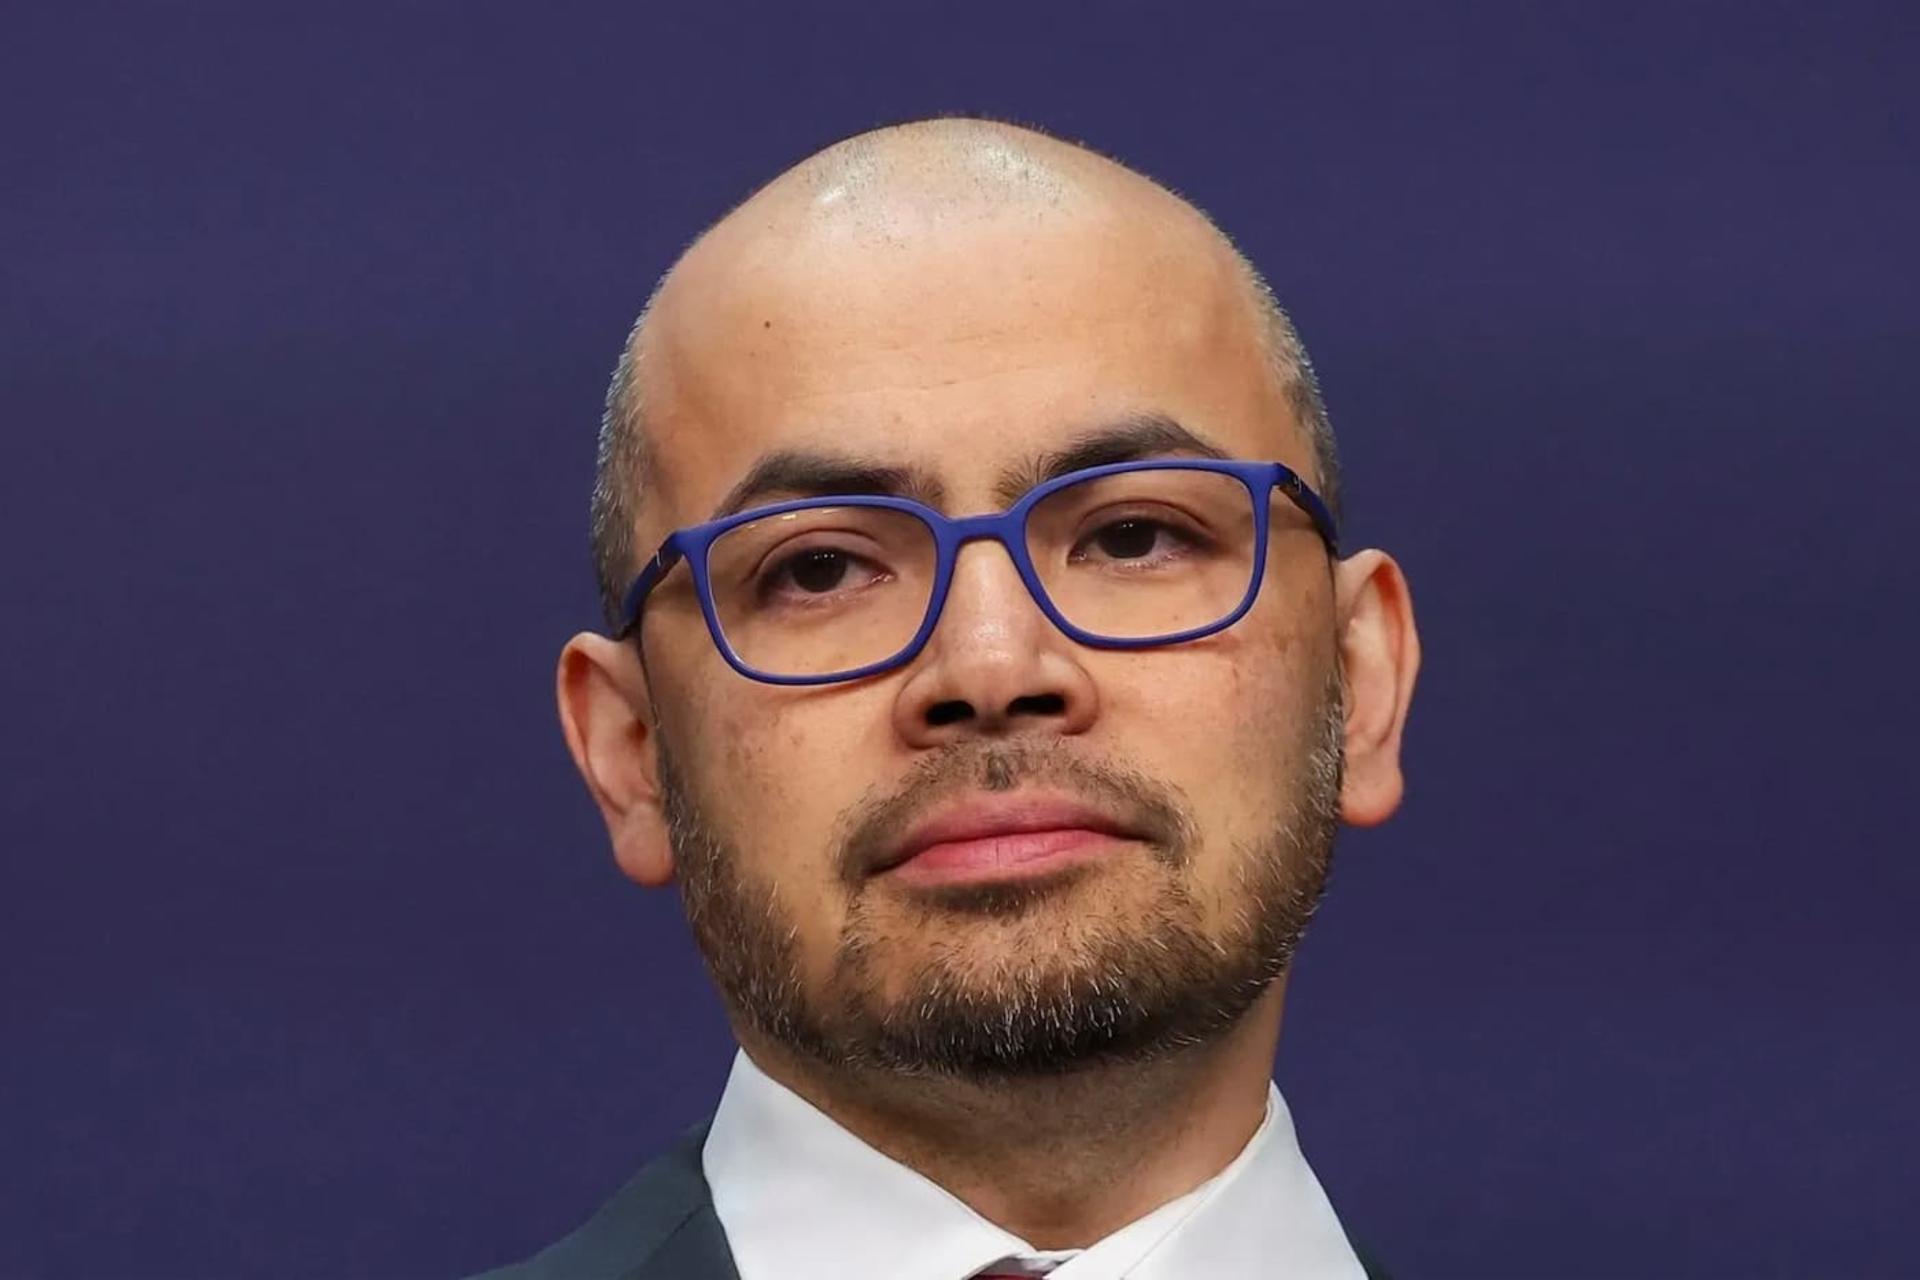 چهره دمیس هاسابیس / Demis Hassabis مدیرعامل گوگل دیپ مایند با عینک